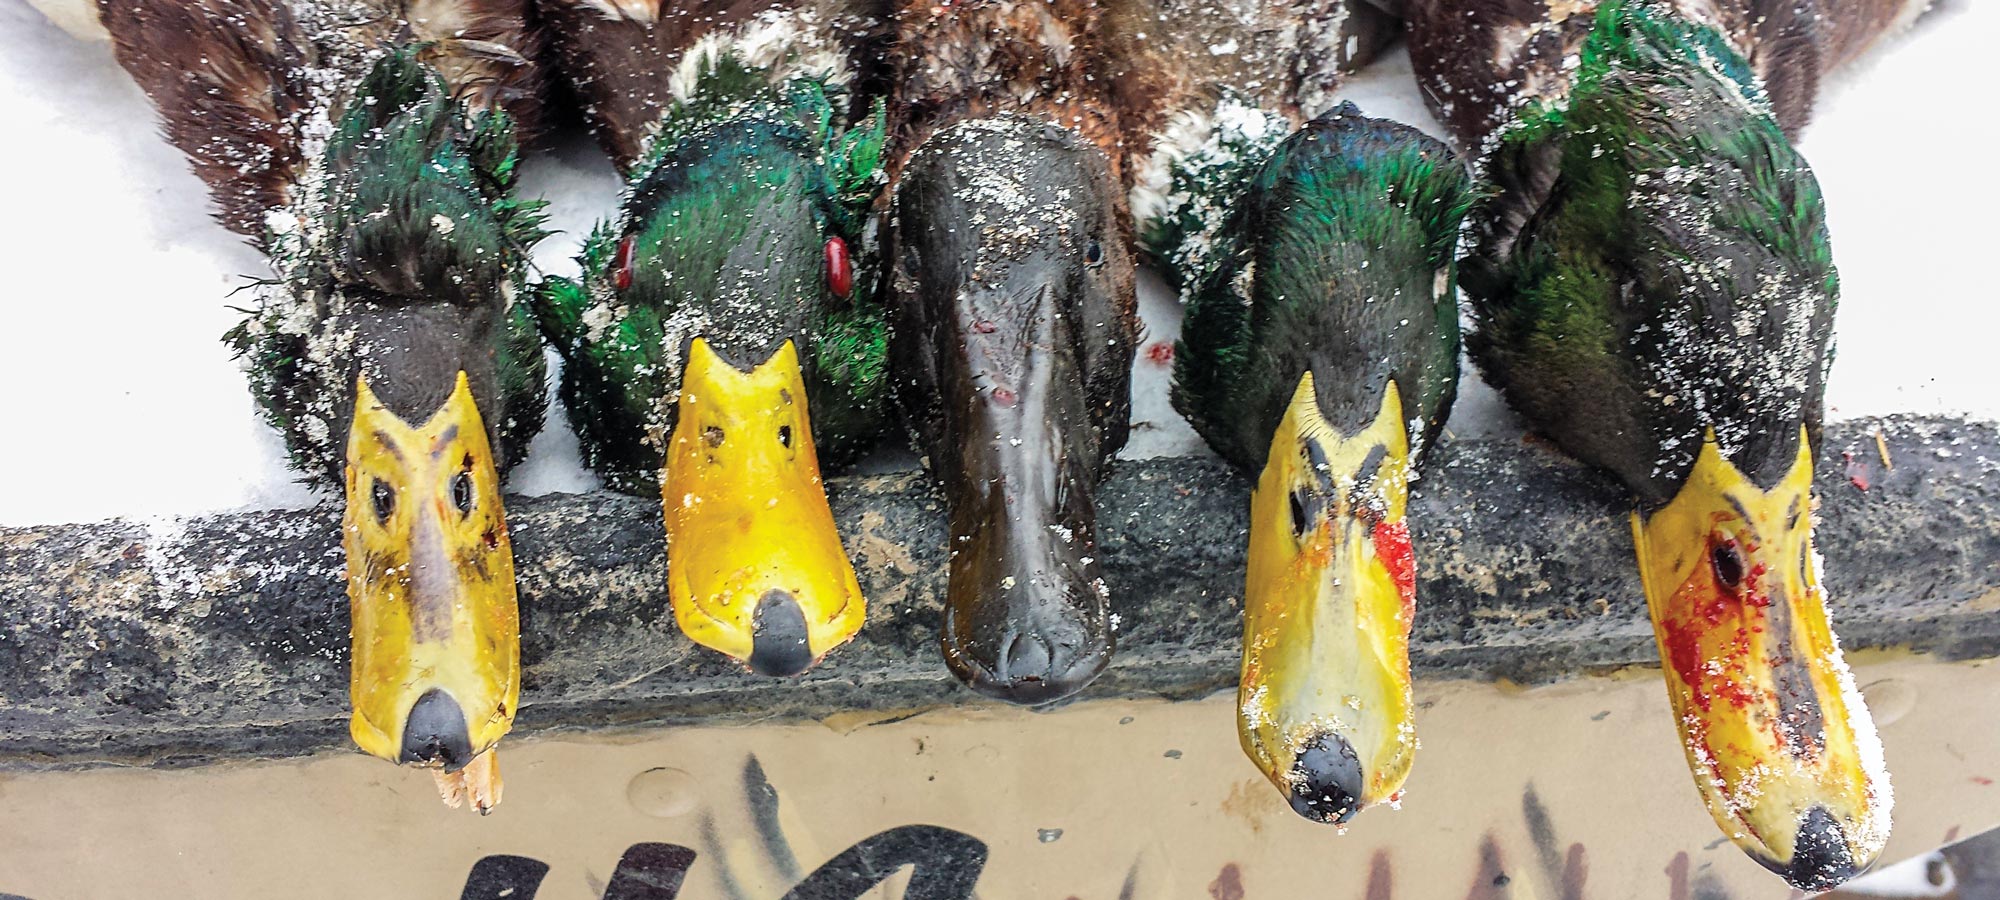 A brace of ducks